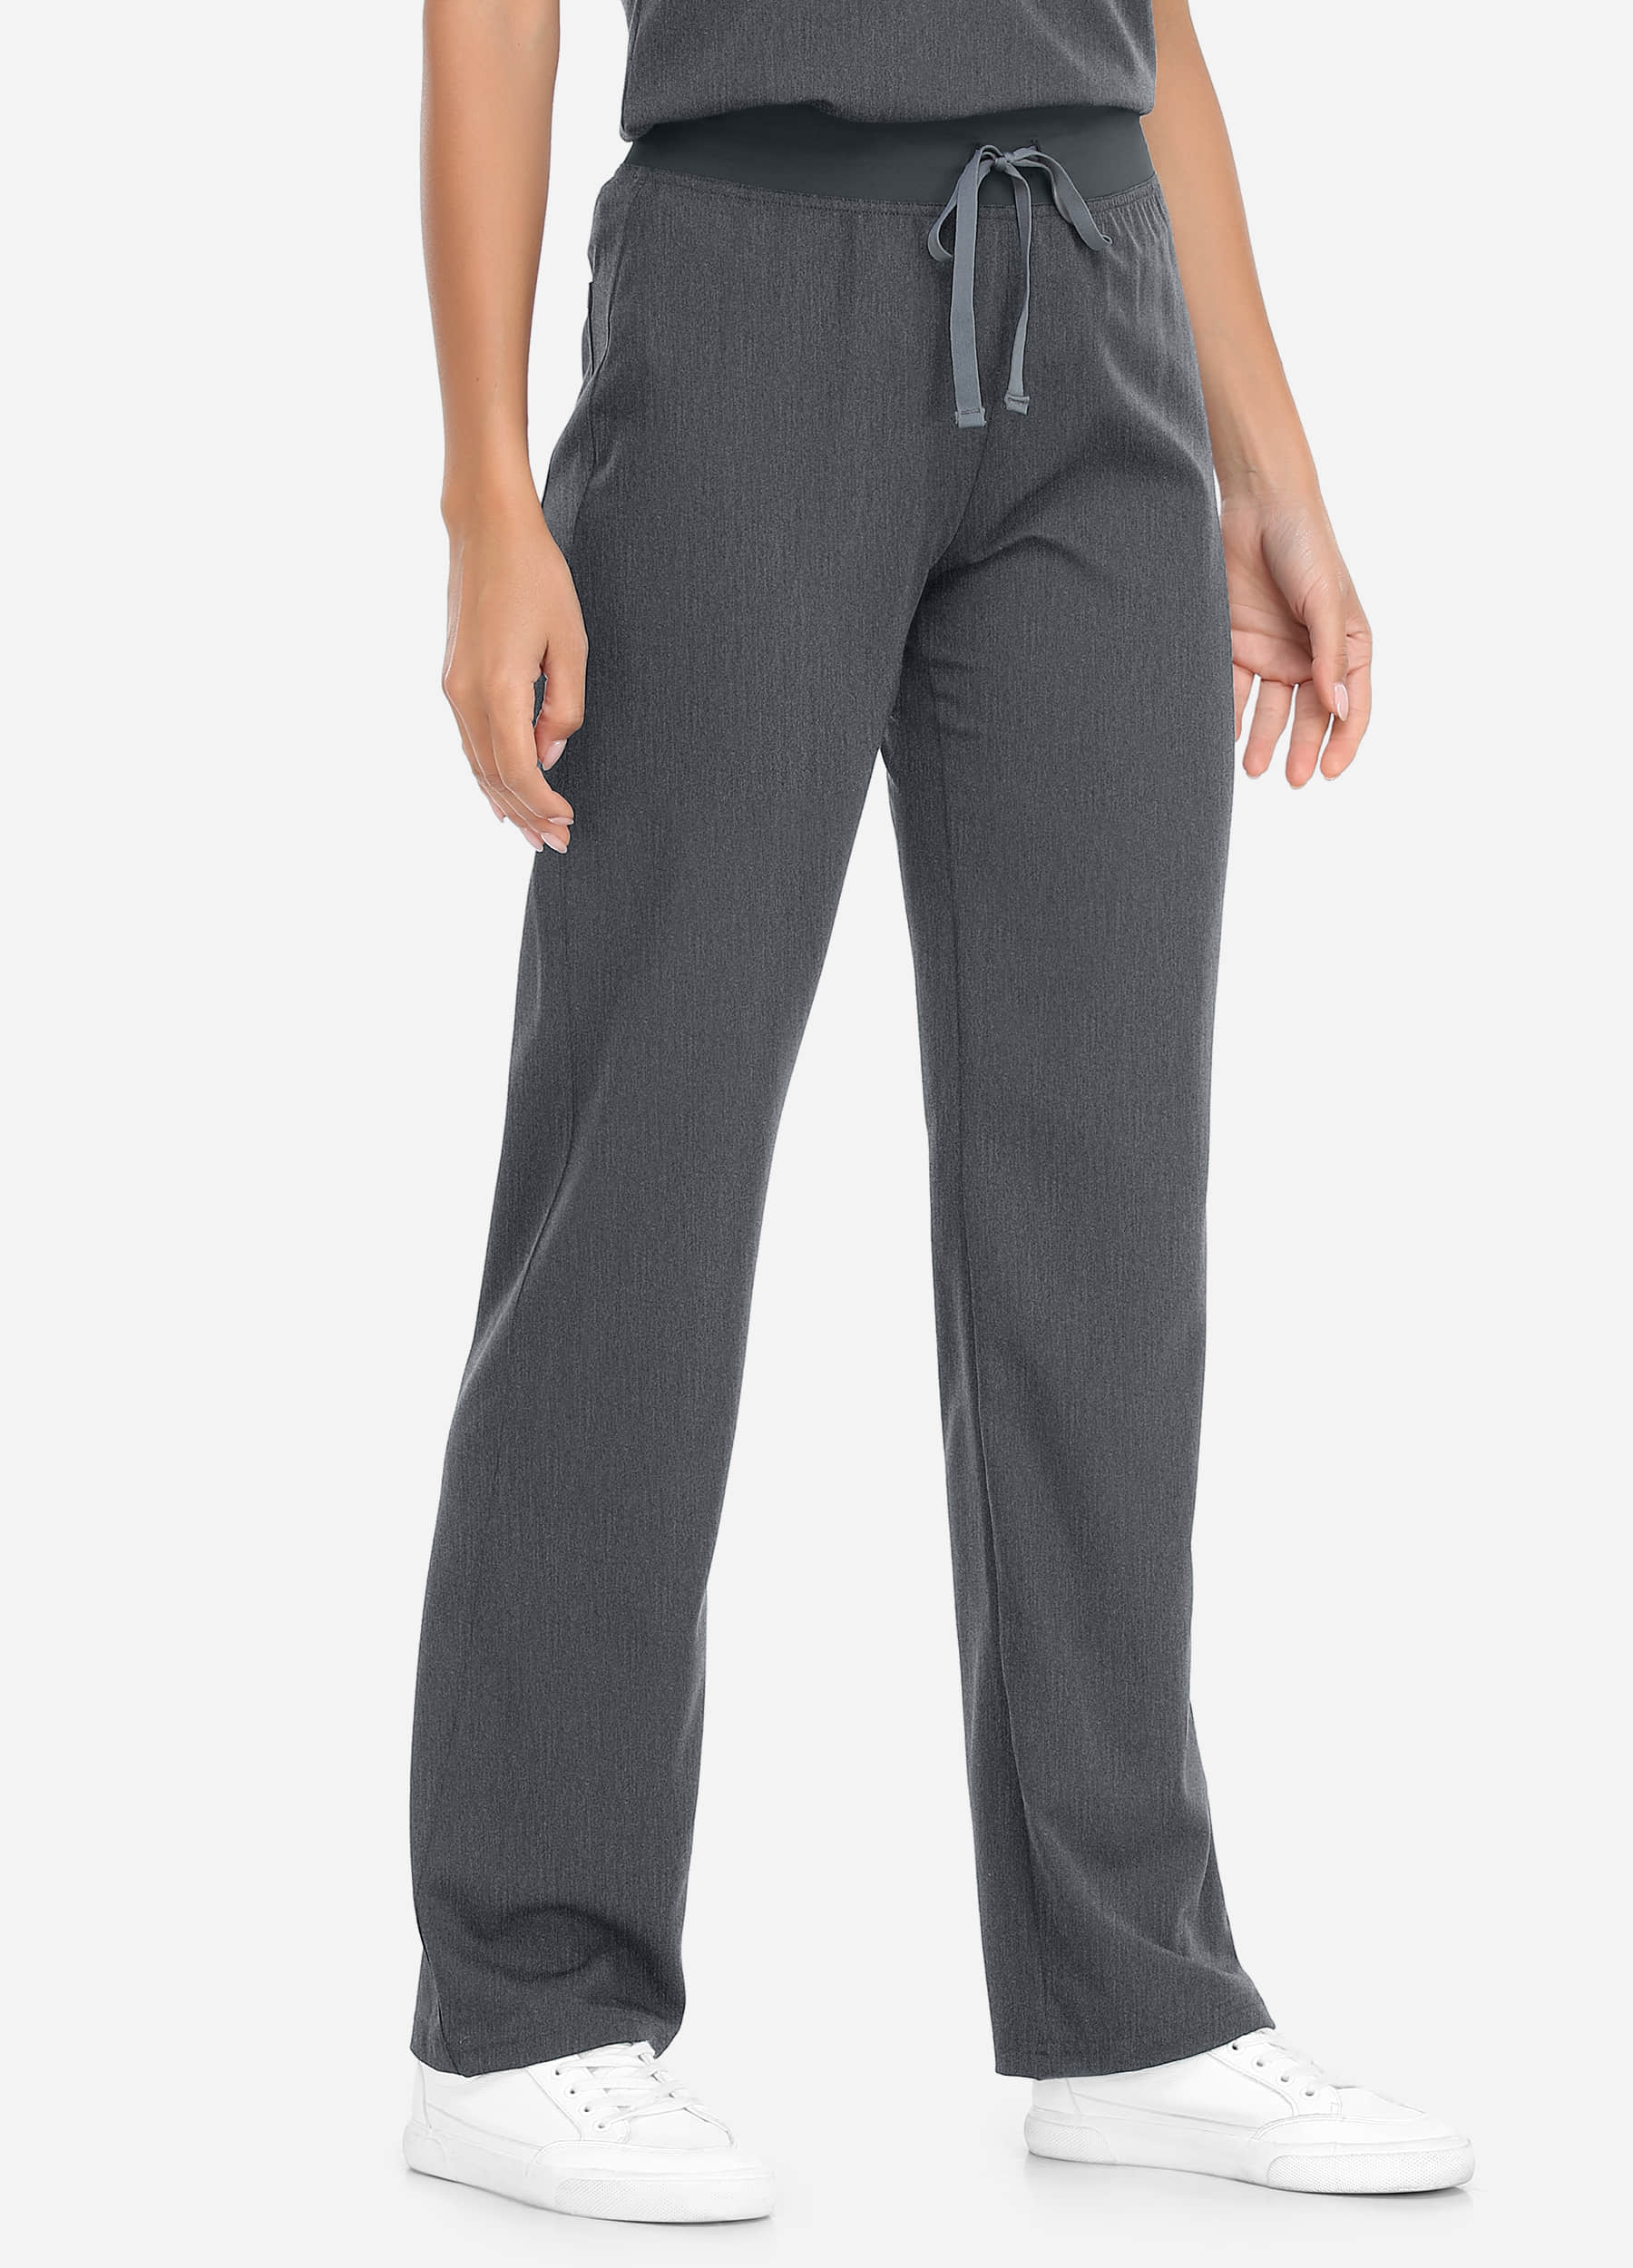 Pantalon médical basique à 2 poches pour femme